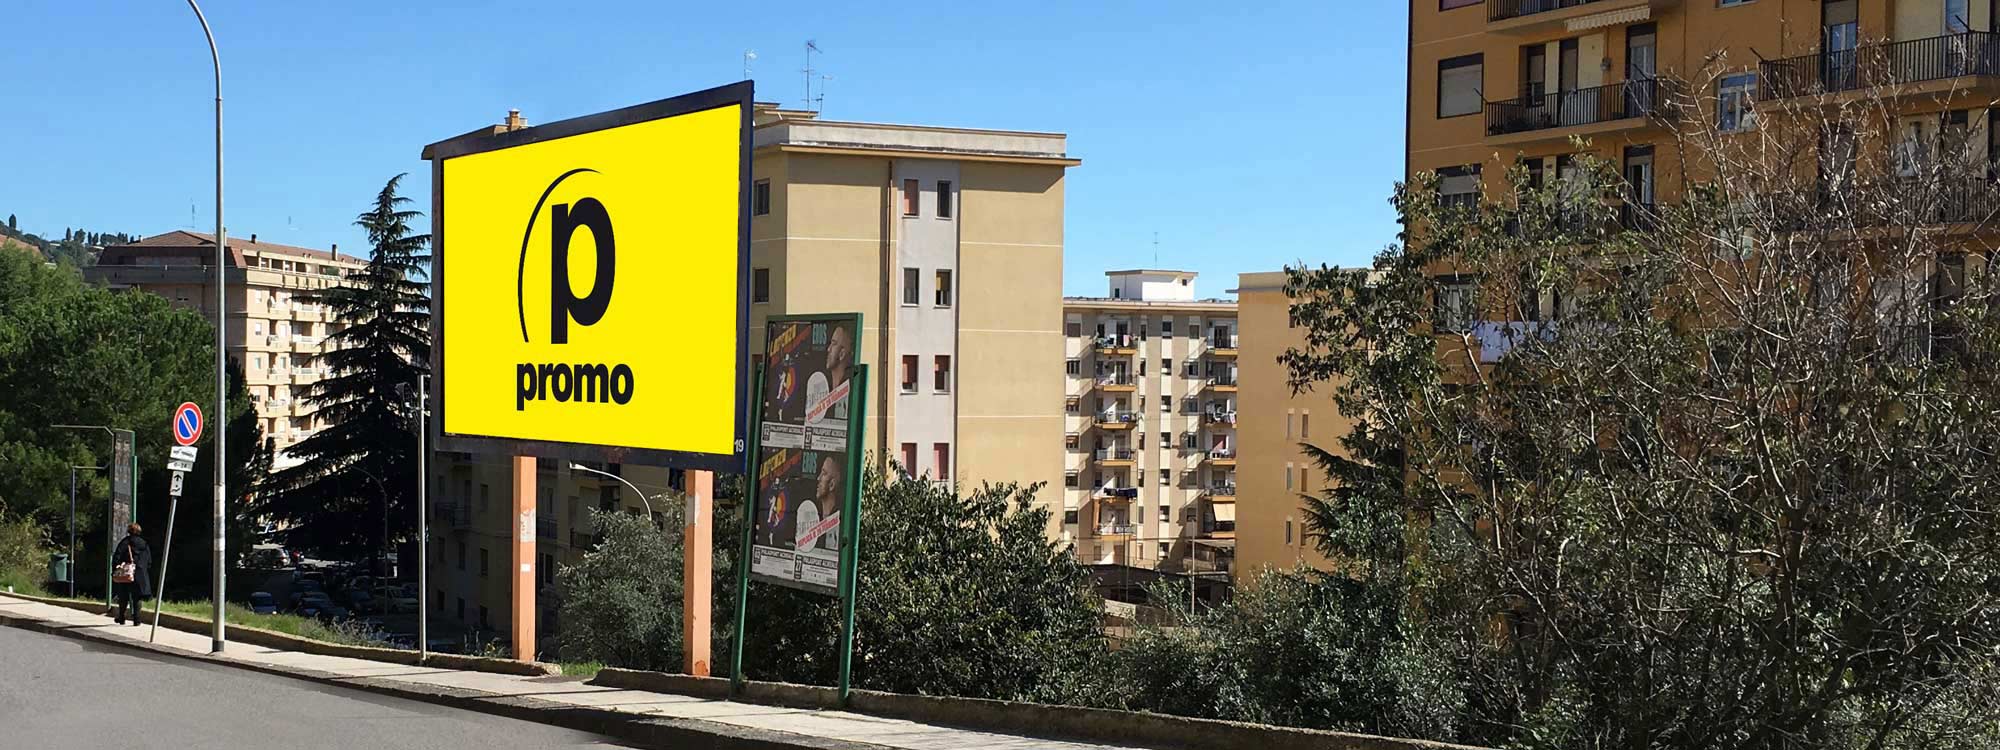 Promo Affissioni Caltanissetta
